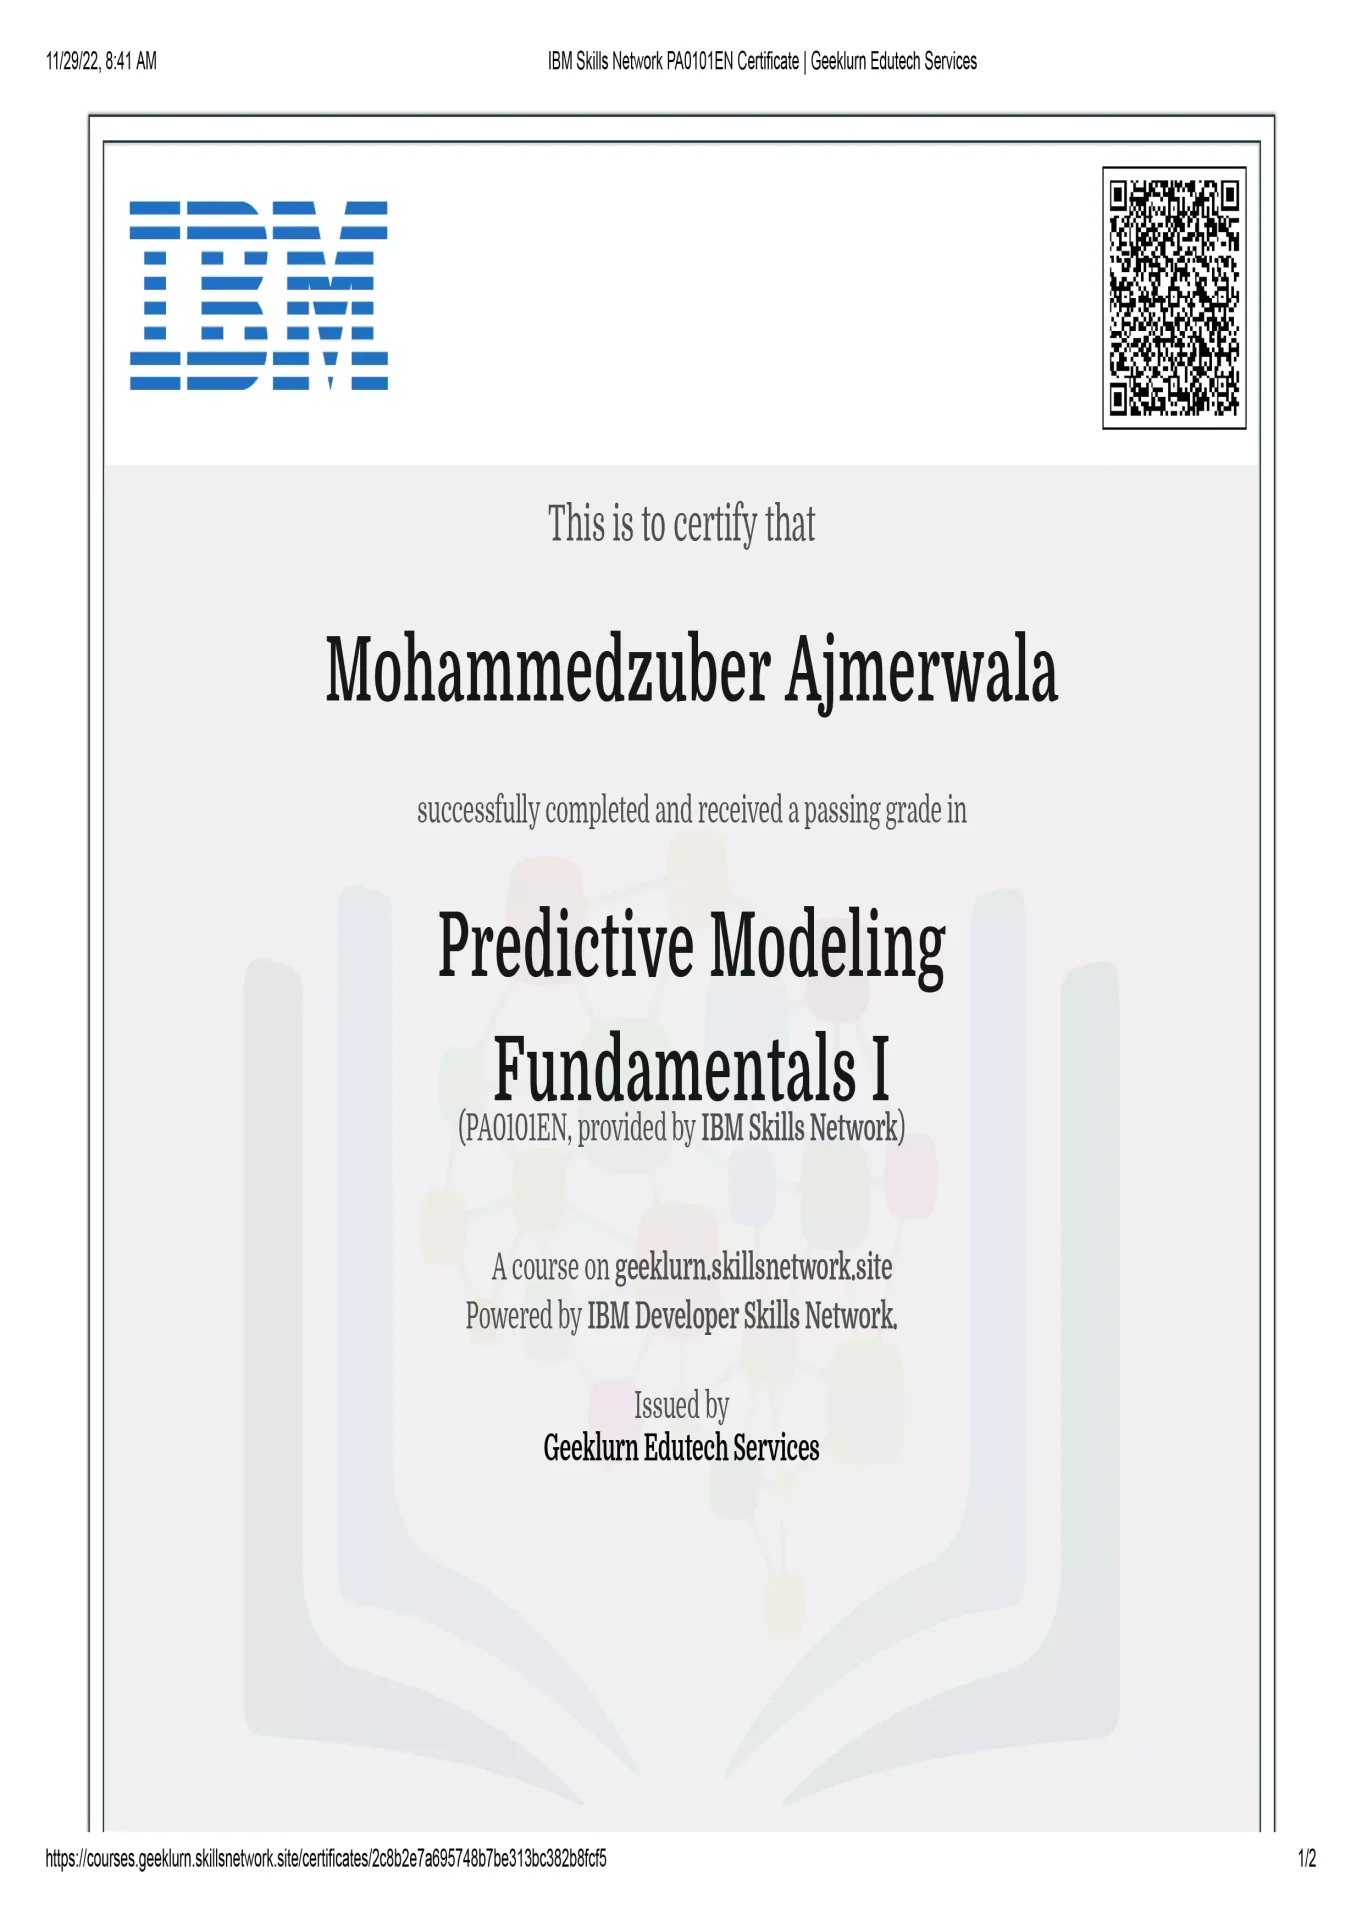 predictive-modeling-fundamentals-i-1